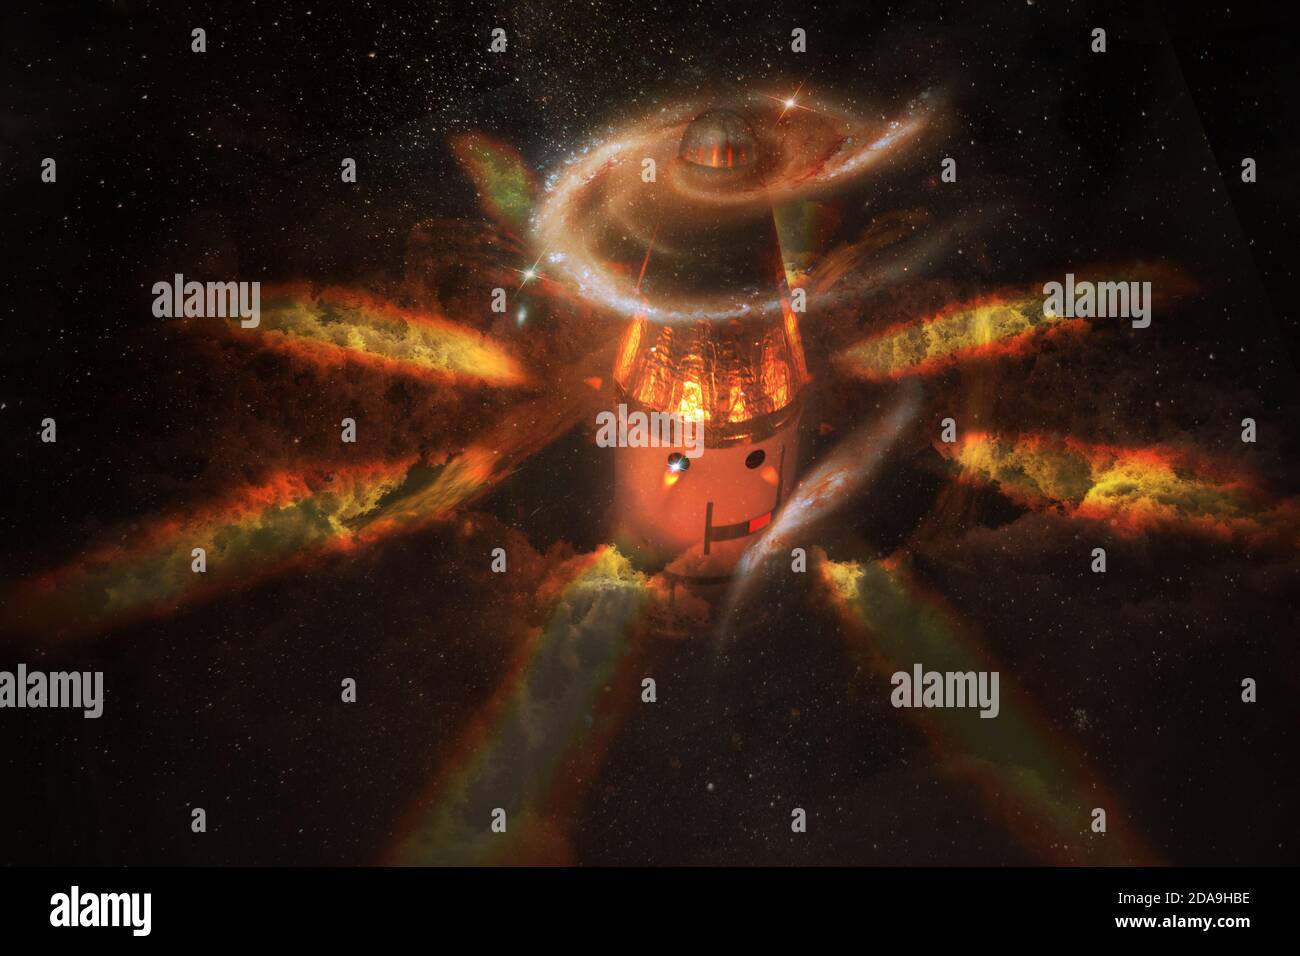 Lancio della navicella spaziale in uno stile di carattere cartoon con fiamme e nuvole di stelle intorno e galassia a spirale nella parte anteriore di. Elementi di questa immagine furni Foto Stock